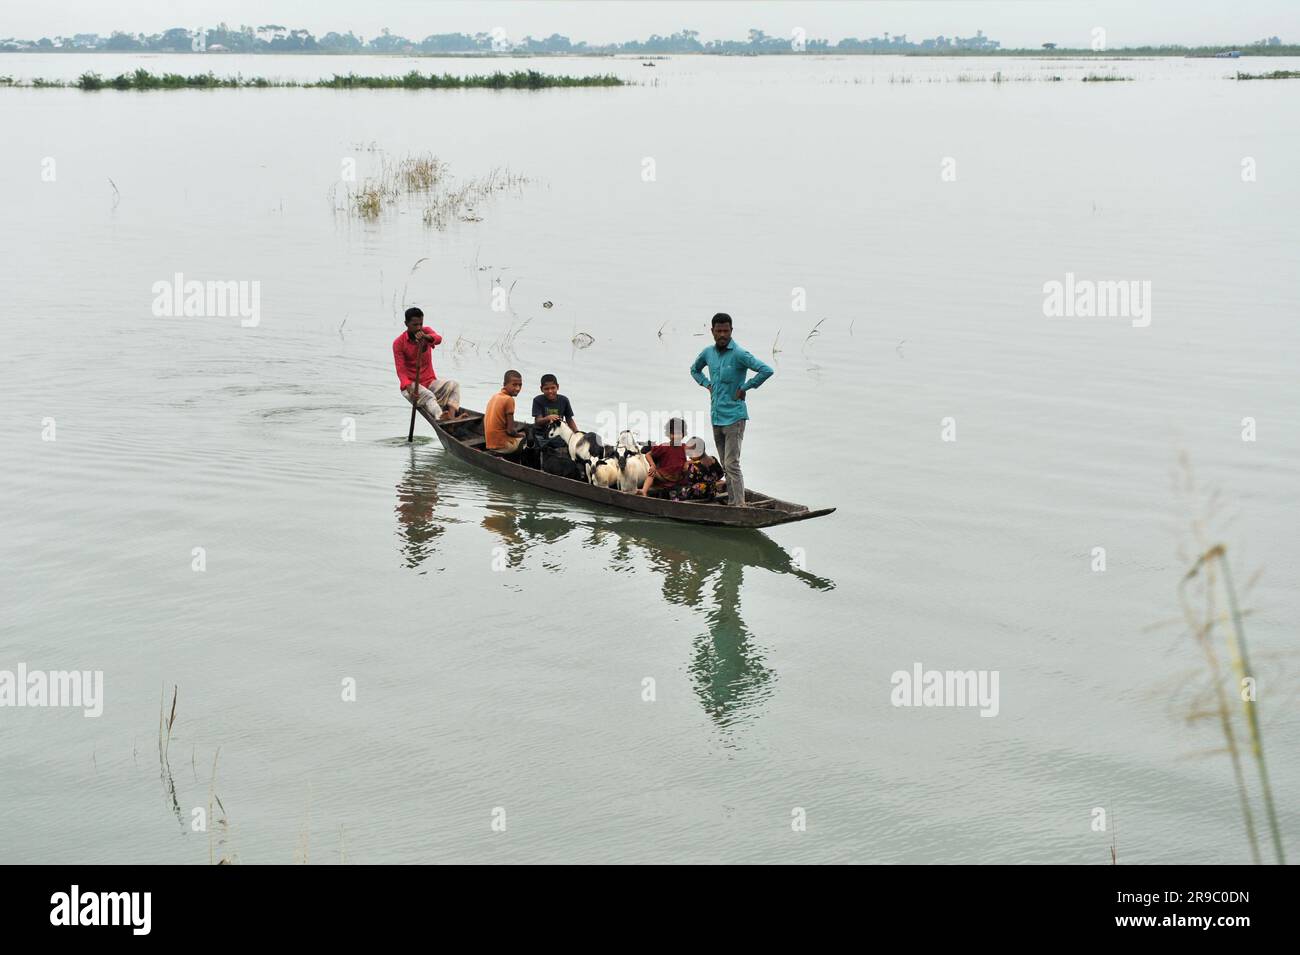 Un villageois est à la recherche de terres hautes pour nourrir ses chèvres par bateau. En raison des pluies incessantes, les niveaux d'eau dans les rivières et les canaux ont augmenté, ce qui a entraîné l'inondation des zones de basse altitude bordant la division de Sylhet. La communication routière est coupée dans de nombreux villages. Région de Barni de Companiganj upazila de Sylhet, Bangladesh. Banque D'Images